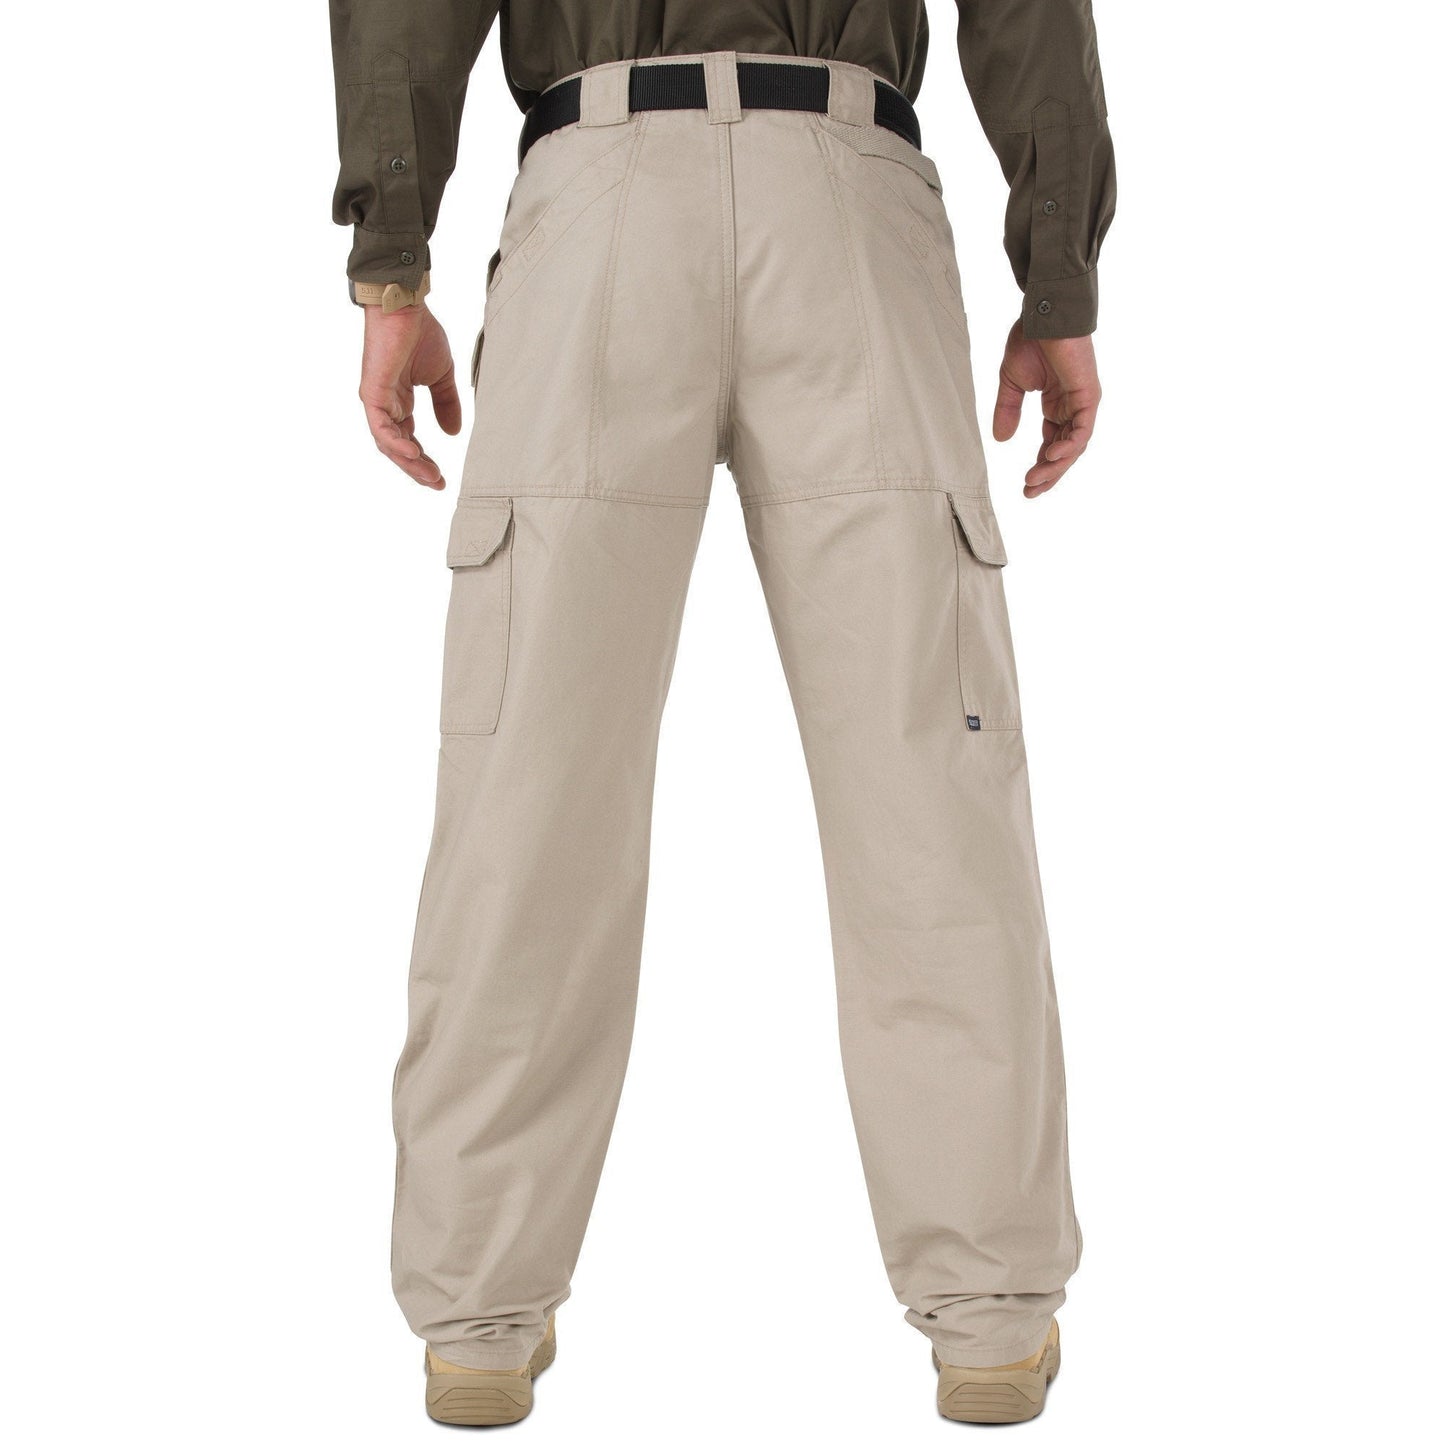 5.11 Tactical Pants - Khaki Tactical Distributors Ltd New Zealand